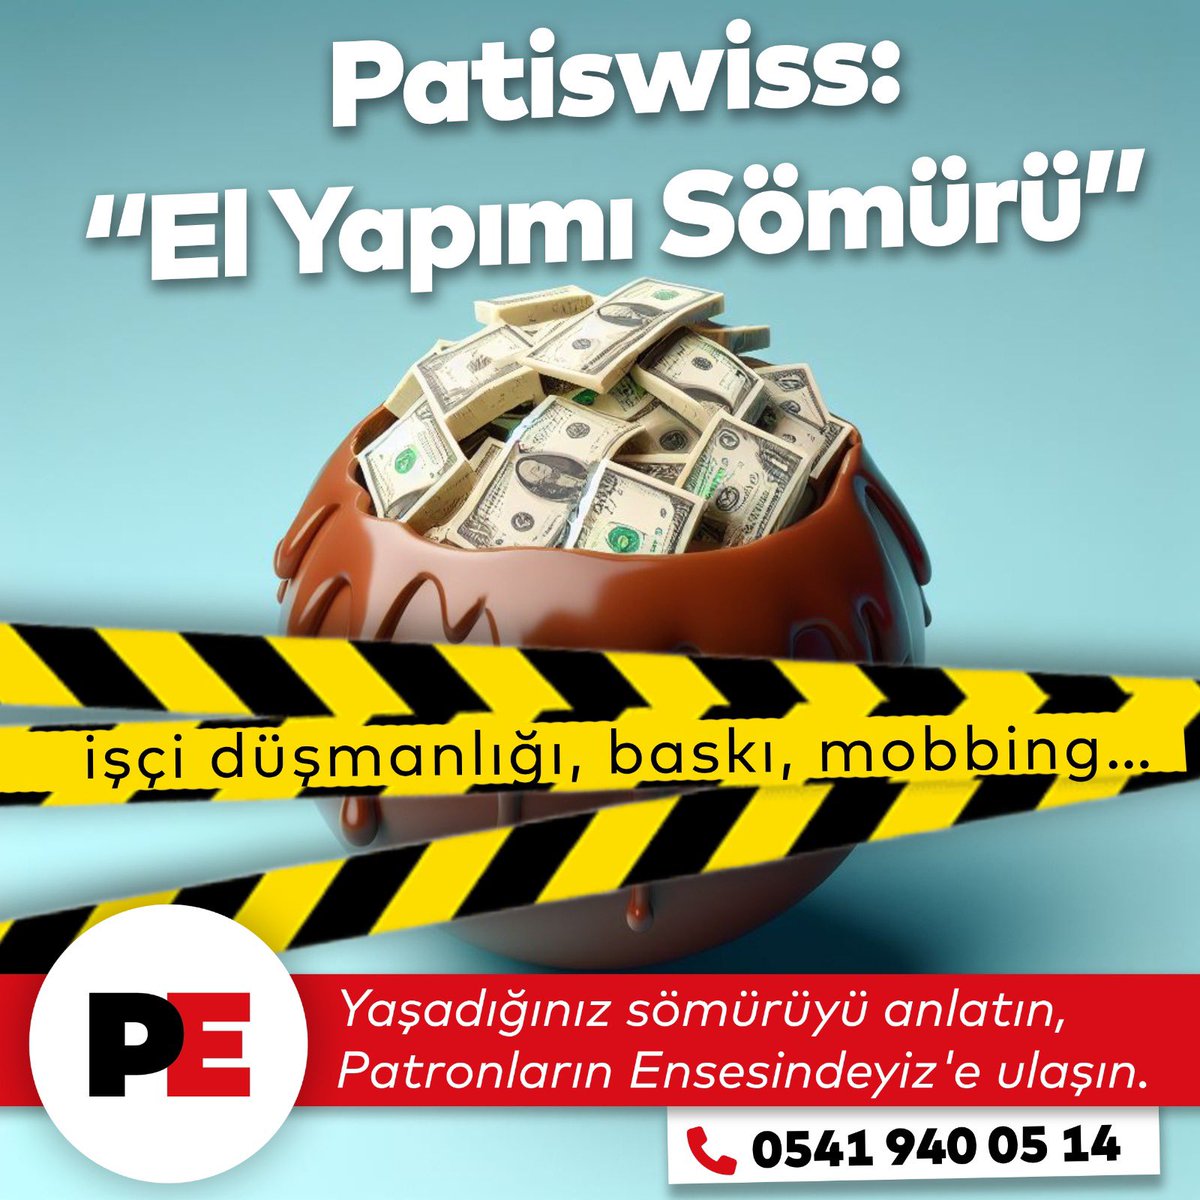 Patiswiss’te sadece CEO kibri yok, işçi düşmanlığı, baskı, mobbing ve hak gaspı var! #Patiswiss işçilerinin neler yaşadığını biliyoruz. Tüm Patiswiss işçilerine çağrımız: Siz de bu sömürüye artık yeter diyorsanız bize ulaşın! 📞 05419400514